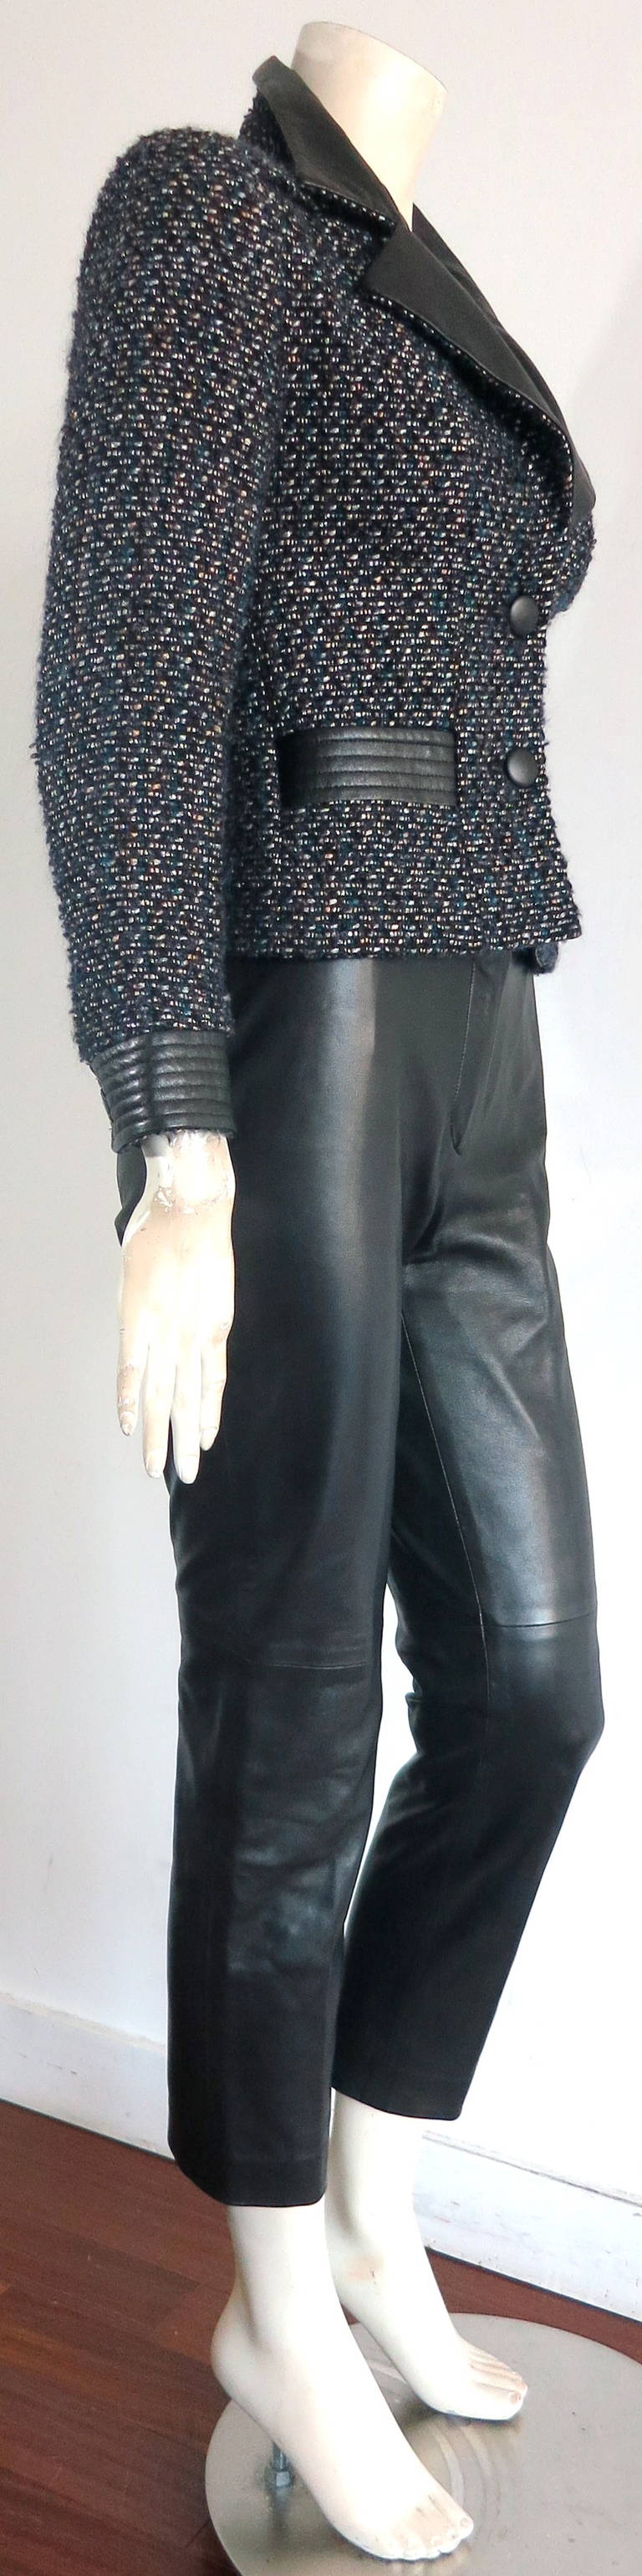 Women's CHANEL PARIS Lambskin leather & tweed 2pc. pant suit